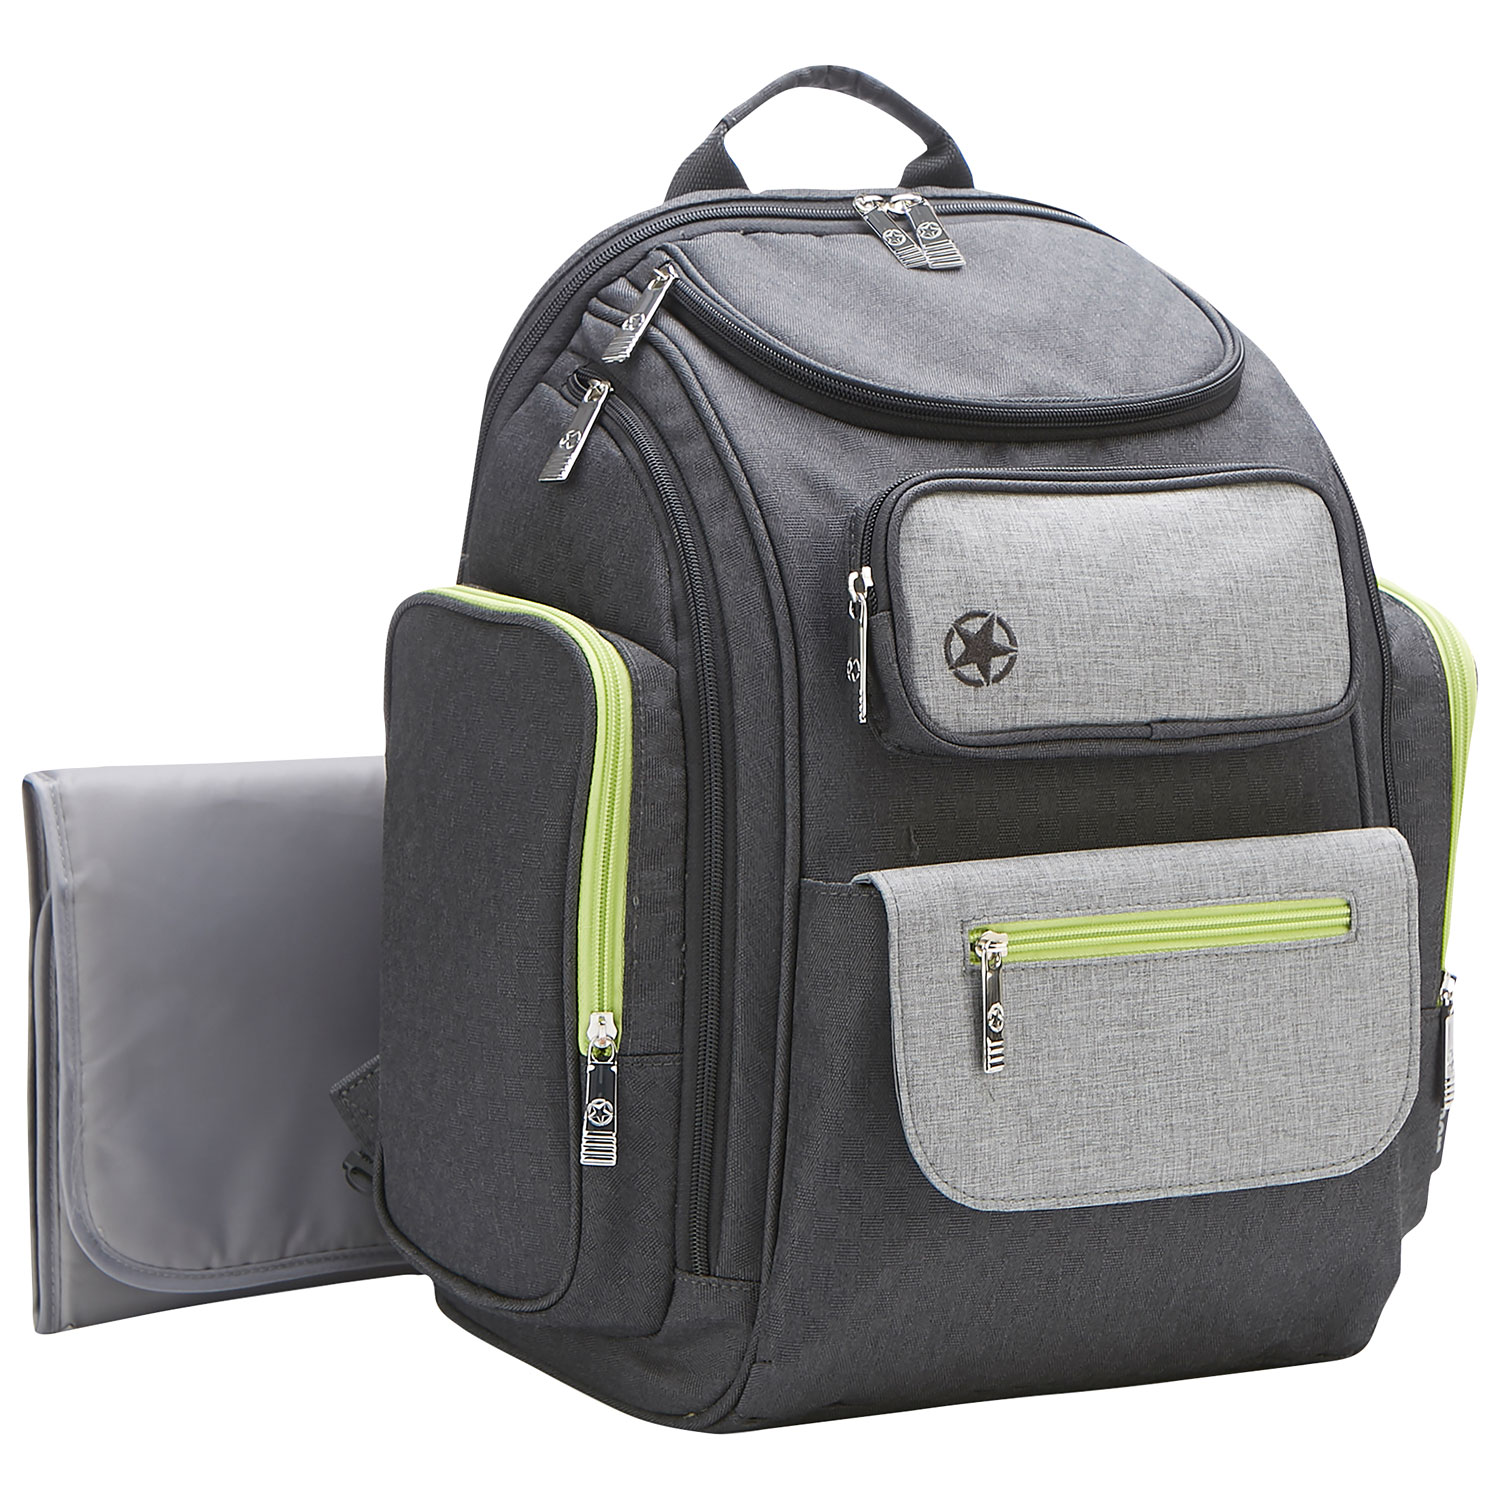 Jeep Adventures Backpack Diaper Bag - Grey/Neon Green